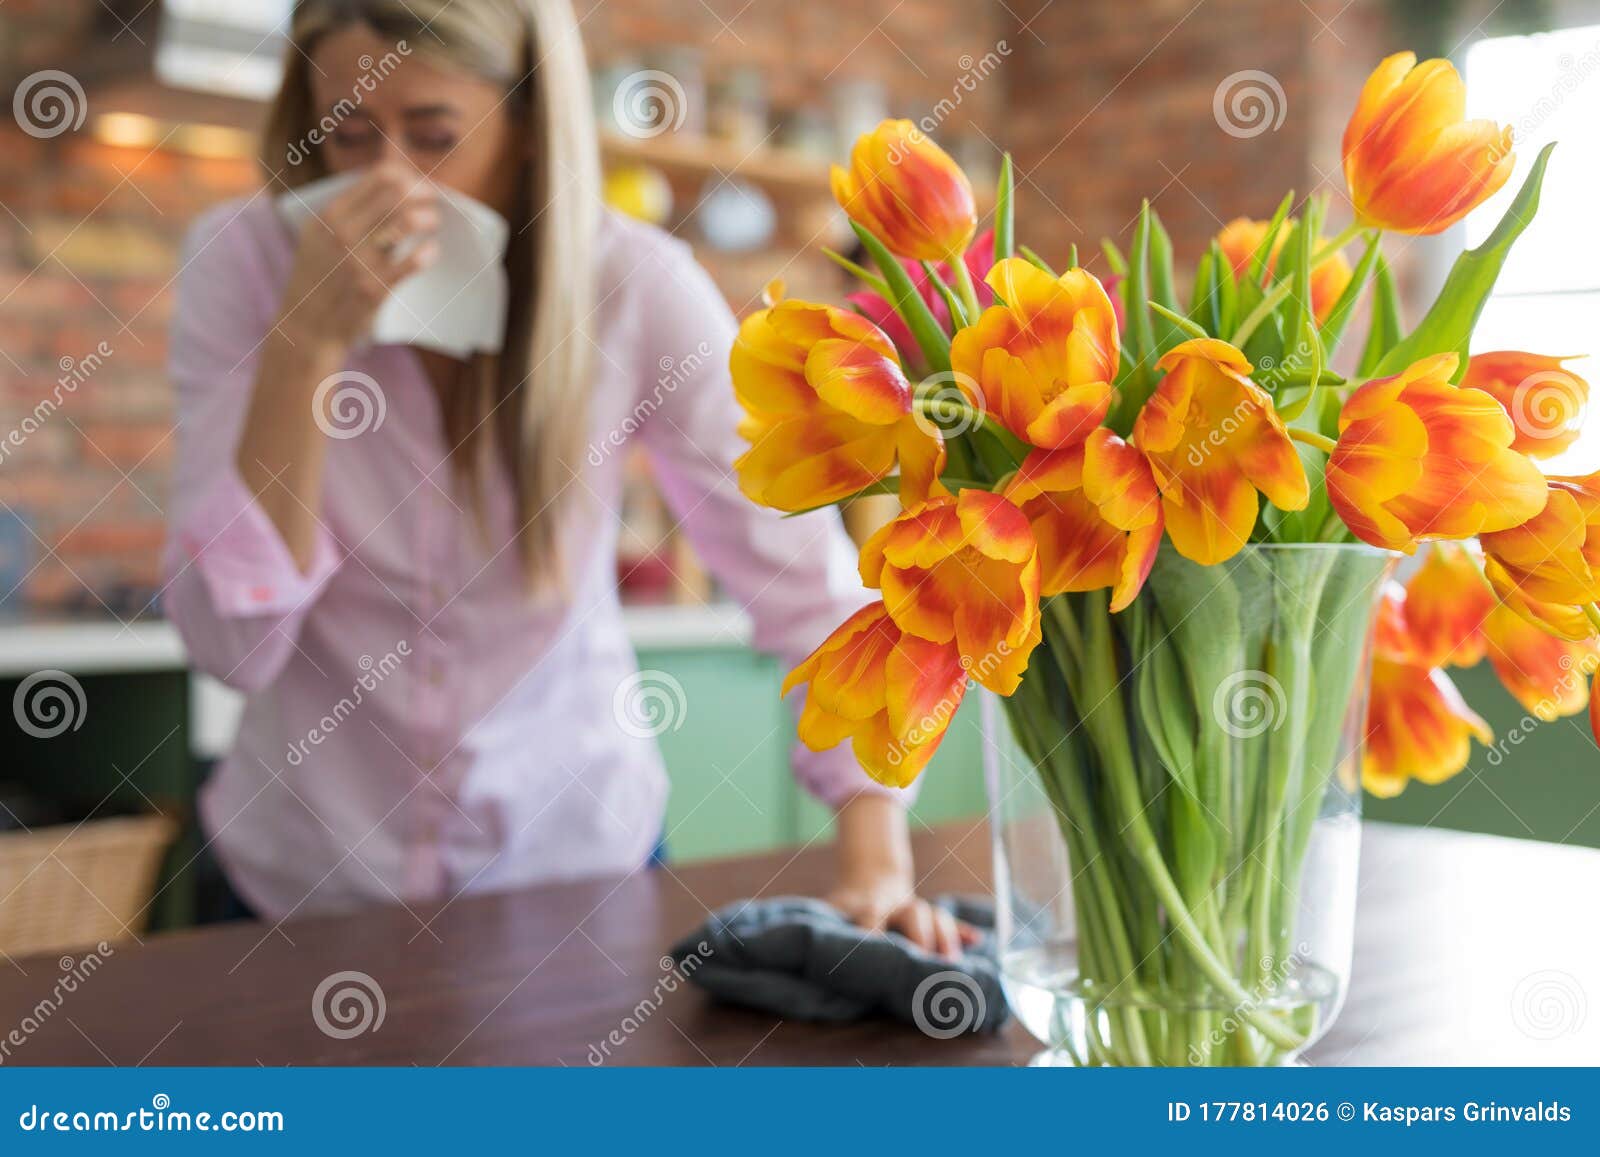 woman having allergies to flowers